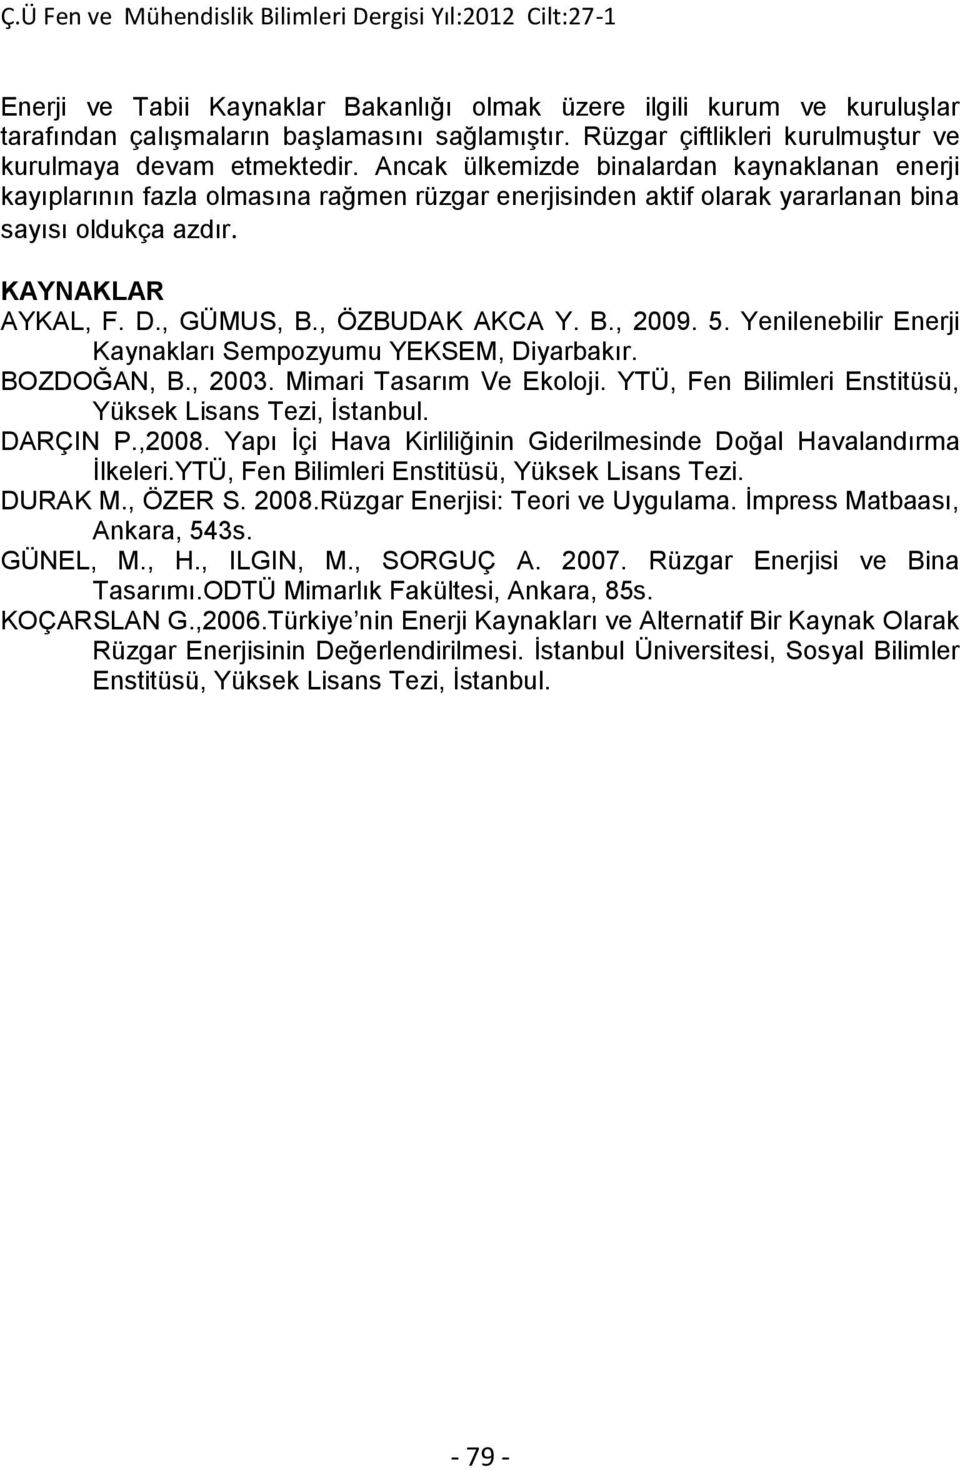 , ÖZBUDAK AKCA Y. B., 2009. 5. Yenilenebilir Enerji Kaynakları Sempozyumu YEKSEM, Diyarbakır. BOZDOĞAN, B., 2003. Mimari Tasarım Ve Ekoloji. YTÜ, Fen Bilimleri Enstitüsü, Yüksek Lisans Tezi, İstanbul.